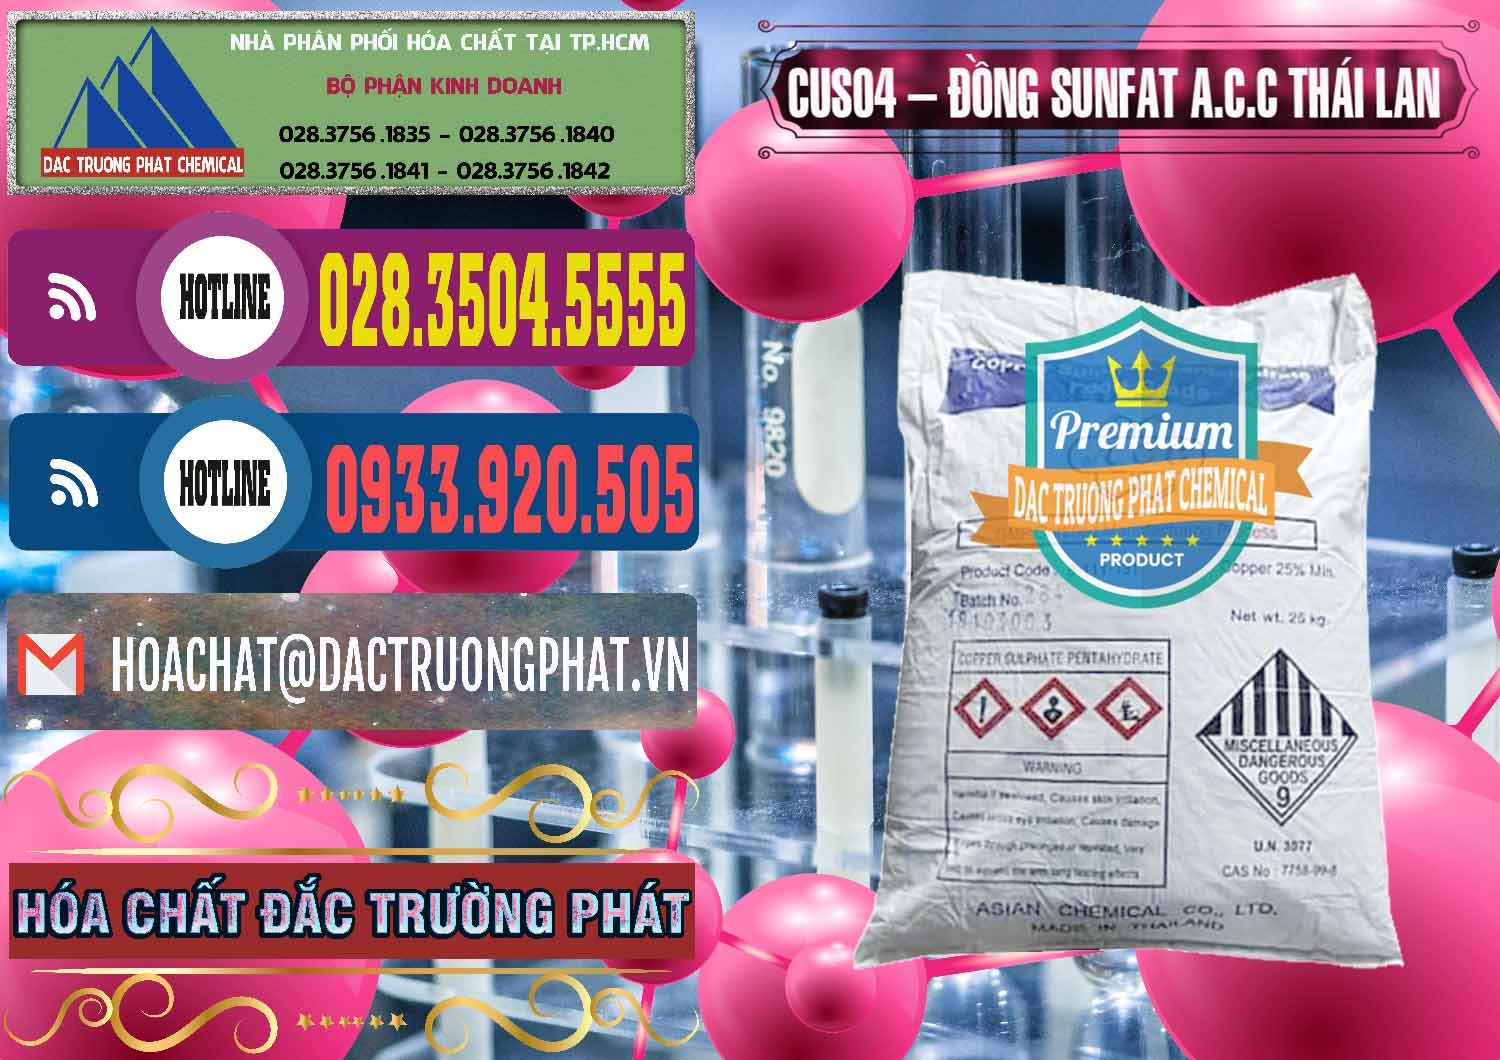 Đơn vị chuyên kinh doanh & bán CuSO4 – Đồng Sunfat A.C.C Thái Lan - 0249 - Nhà cung cấp & phân phối hóa chất tại TP.HCM - muabanhoachat.com.vn